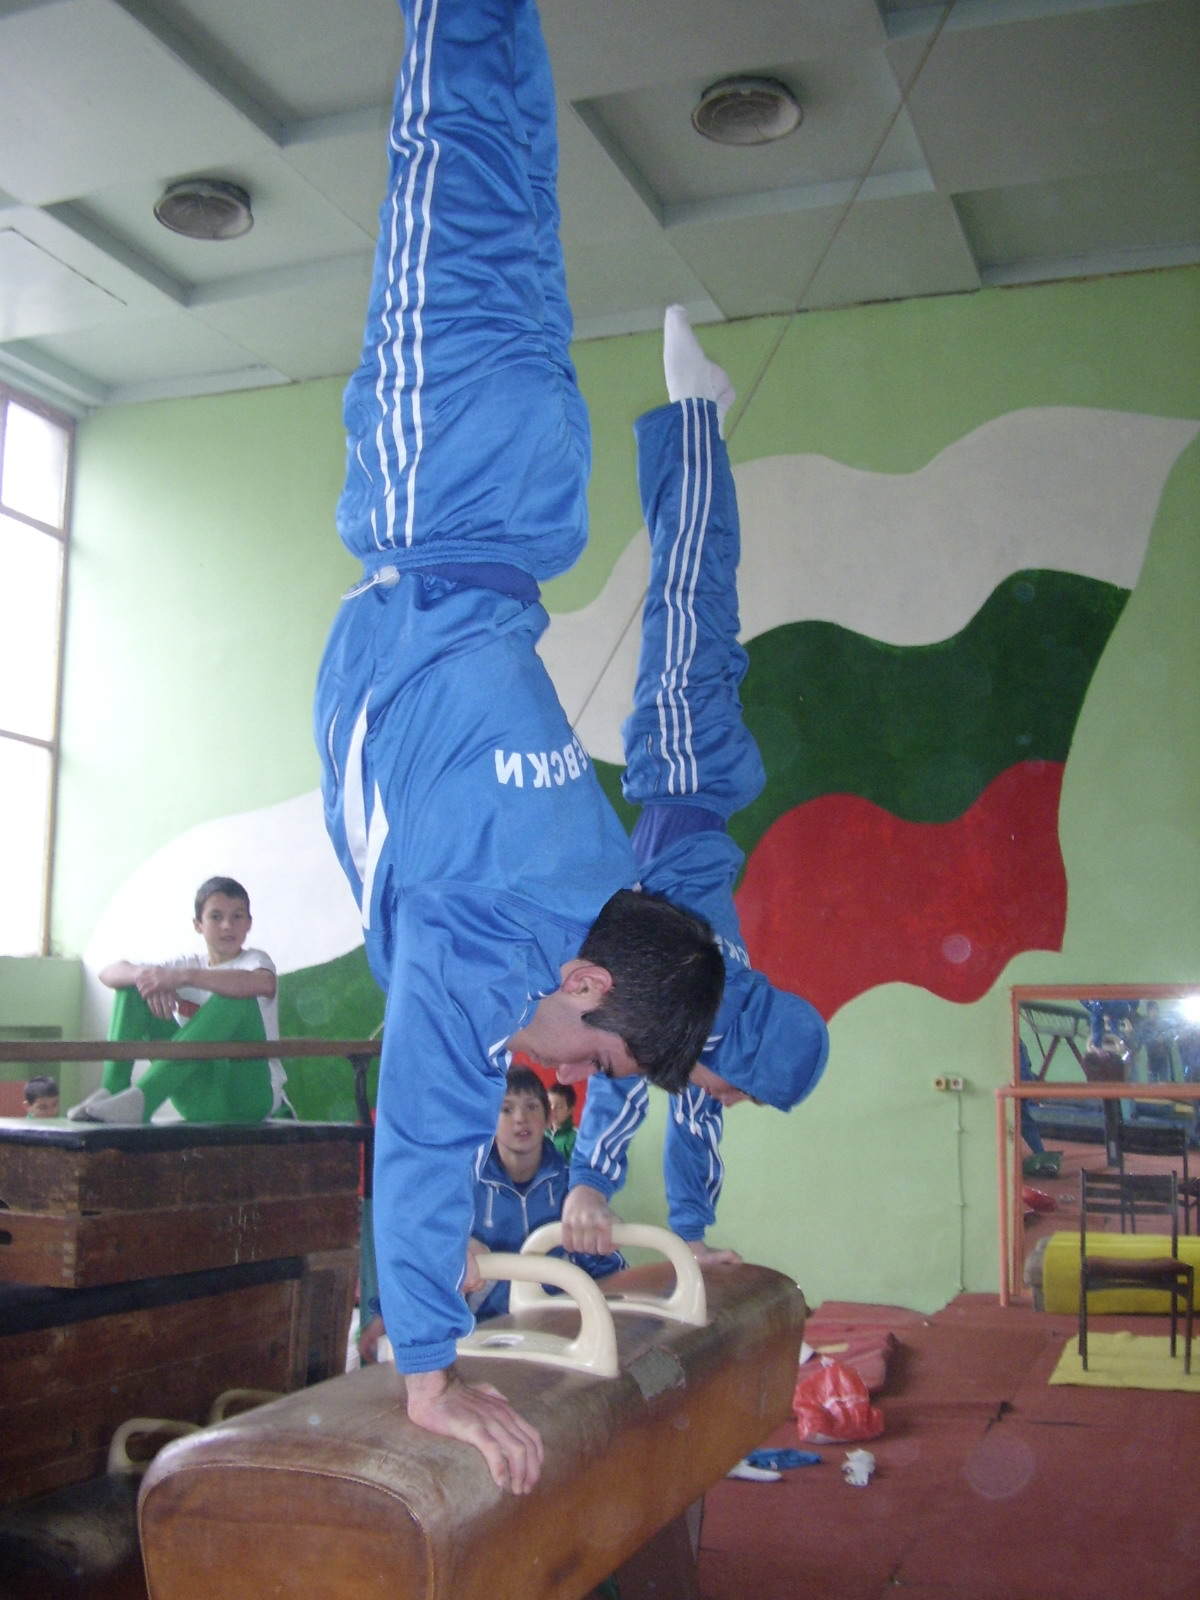 Artistic Gymnastics - Pommel horse Bulgaria - Stefan Kolimechkov